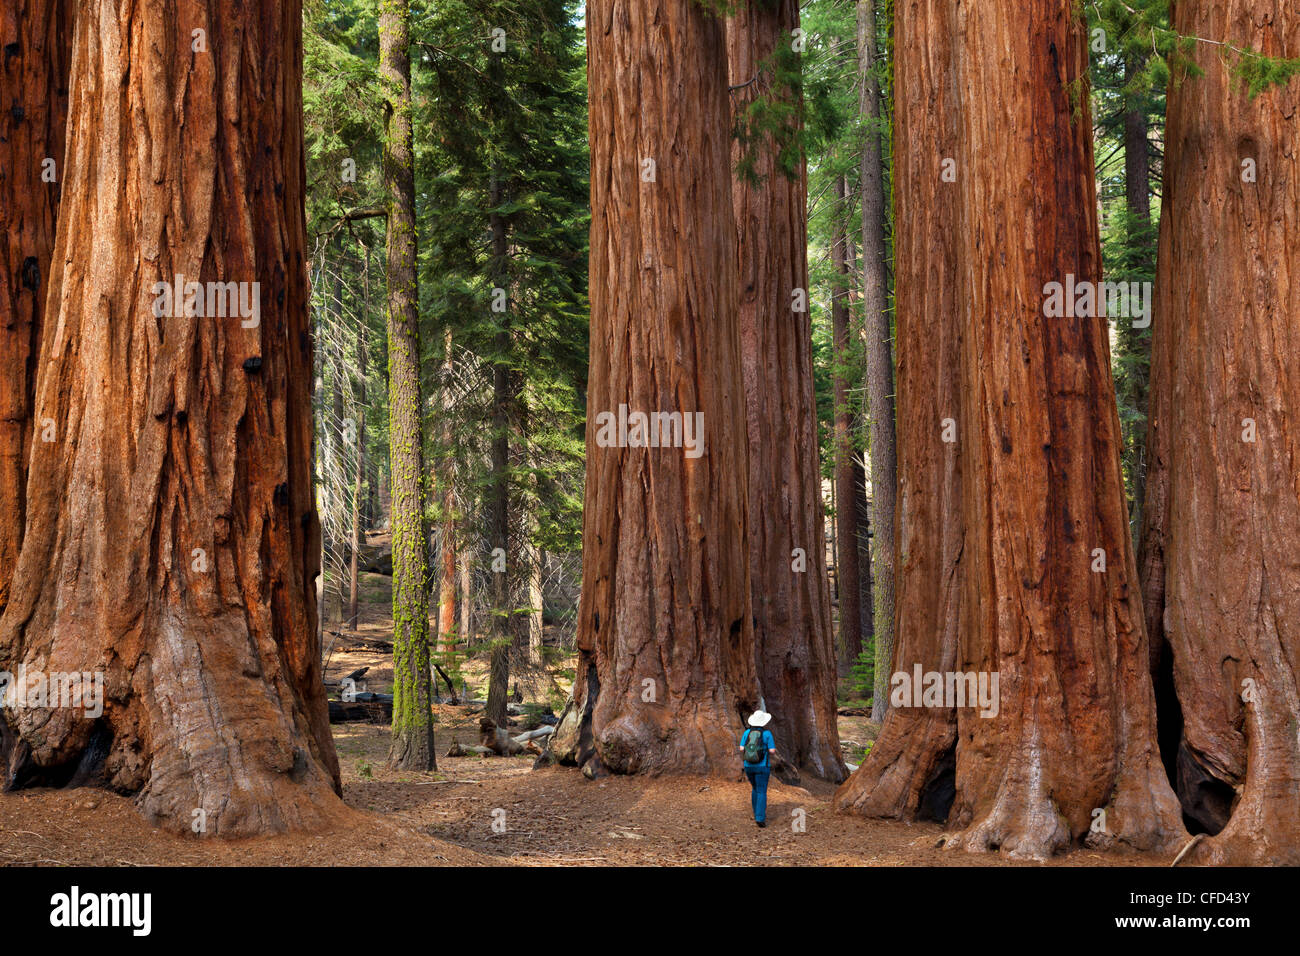 Hiker, admiring the Giant Sequoia trees (Sequoiadendron giganteum), Sequoia National Park, Sierra Nevada, California, USA Stock Photo